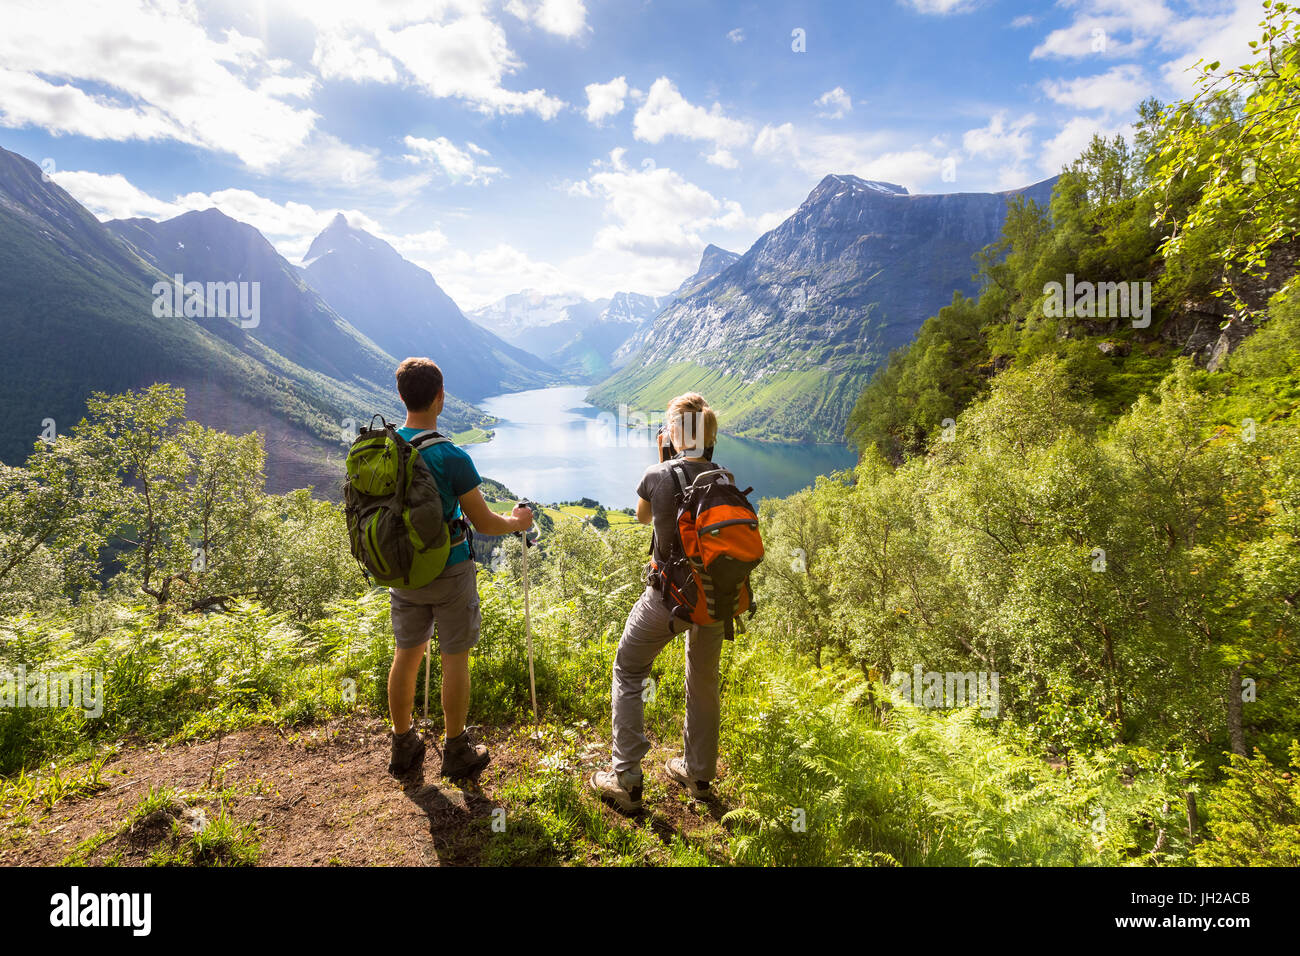 Zwei Wanderer auf Sicht in den Bergen genießen schöne Aussicht auf das Tal mit einem See und sonnigen warmen Wetter im Sommer, grüne Bäume Stockfoto